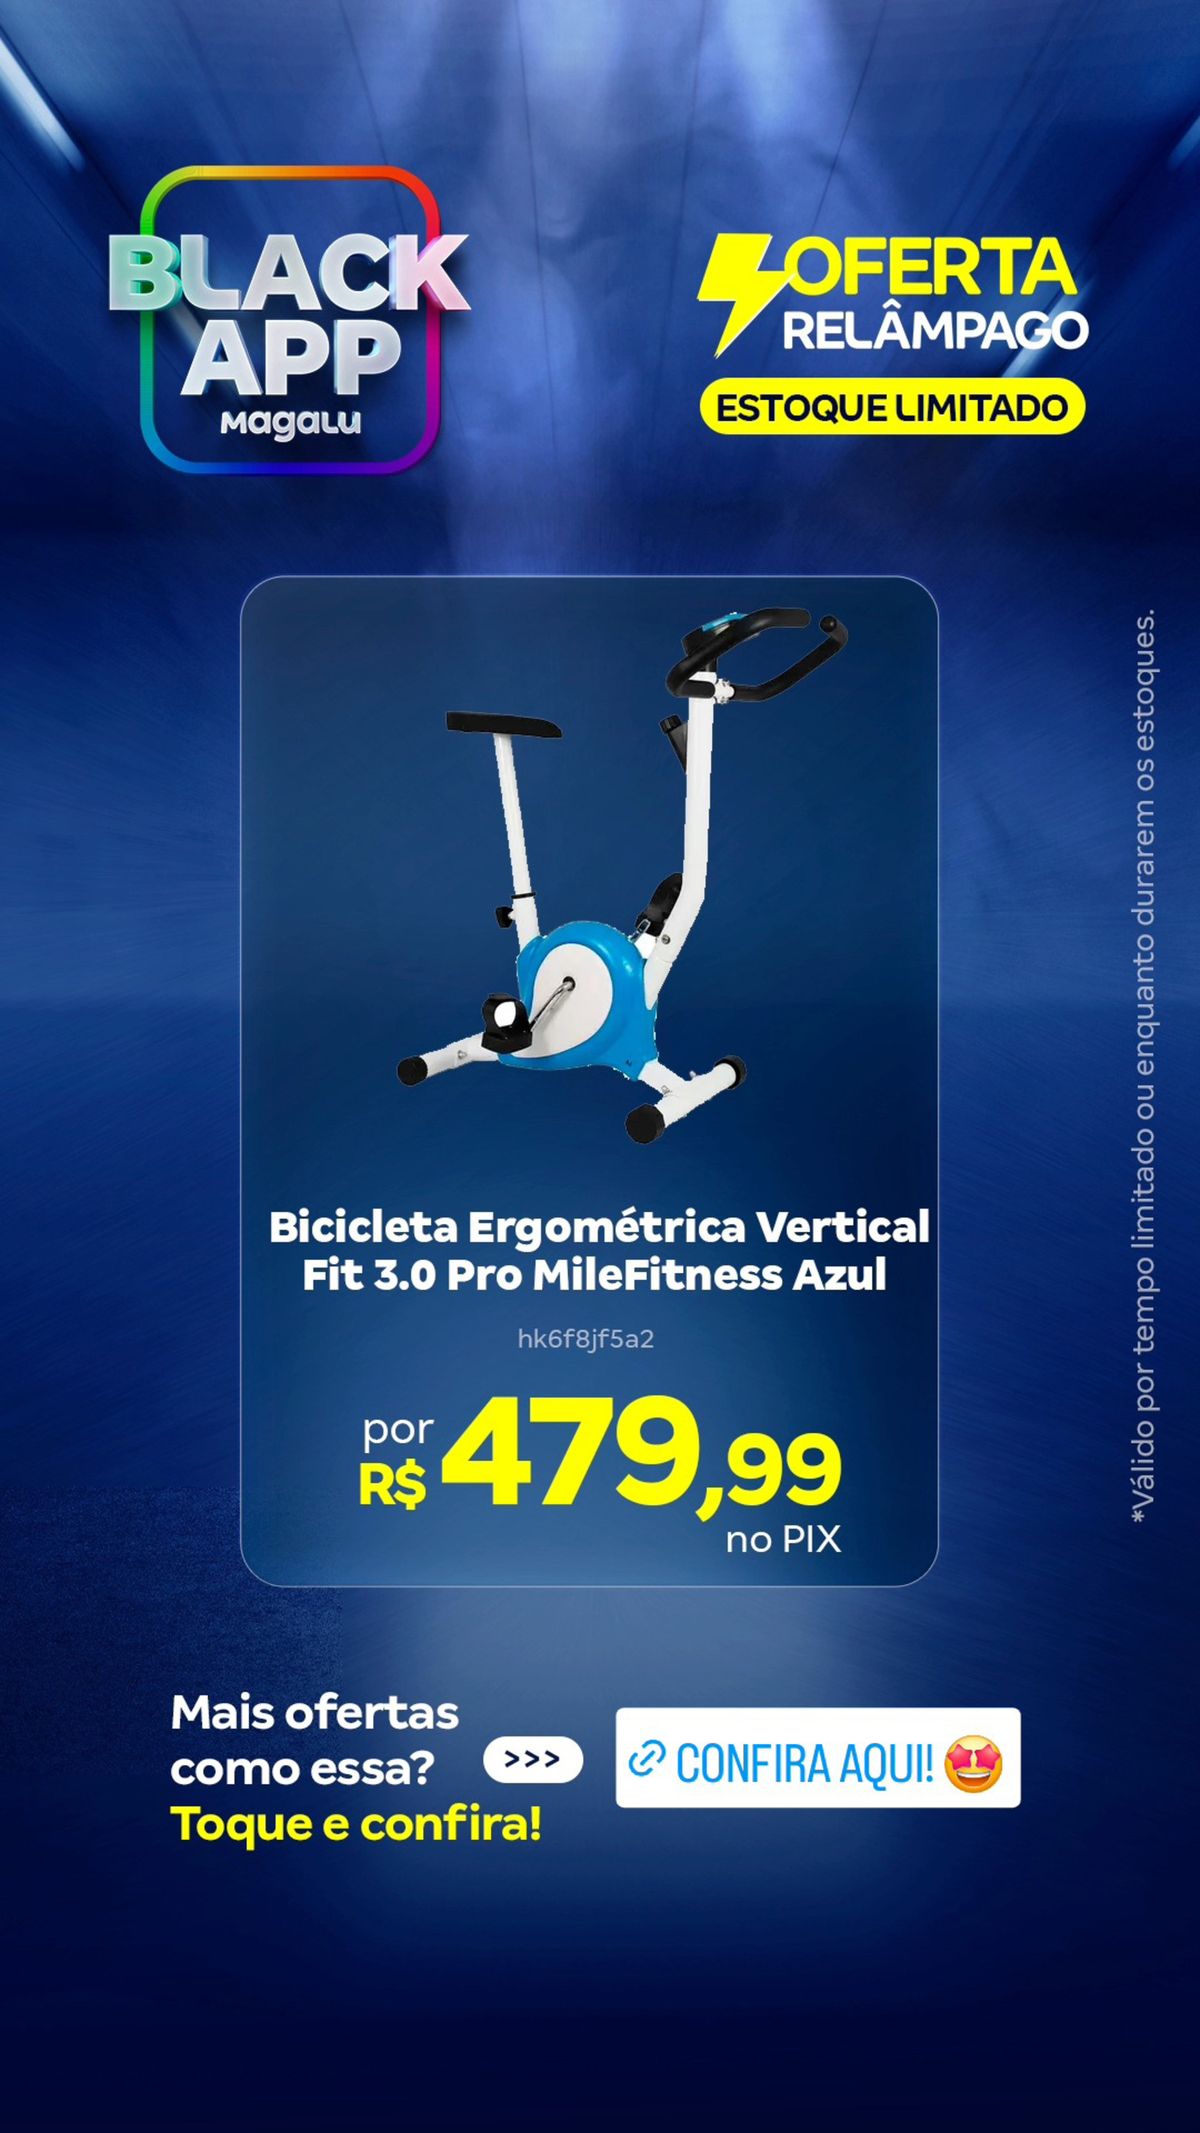 Bicicleta Ergométrica Vertical em Promoção